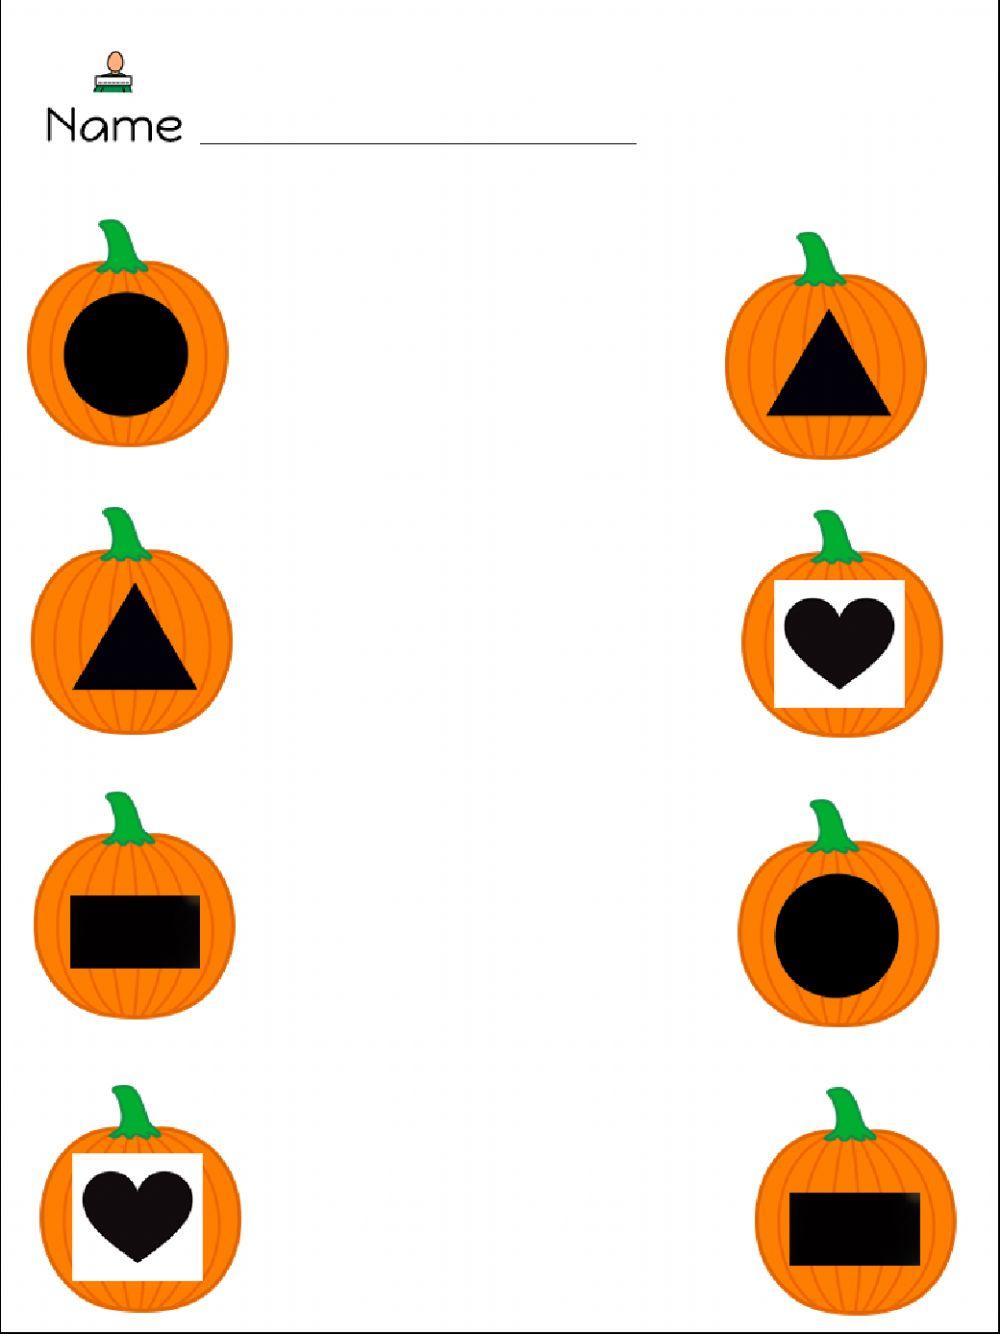 Pumpkin shape match